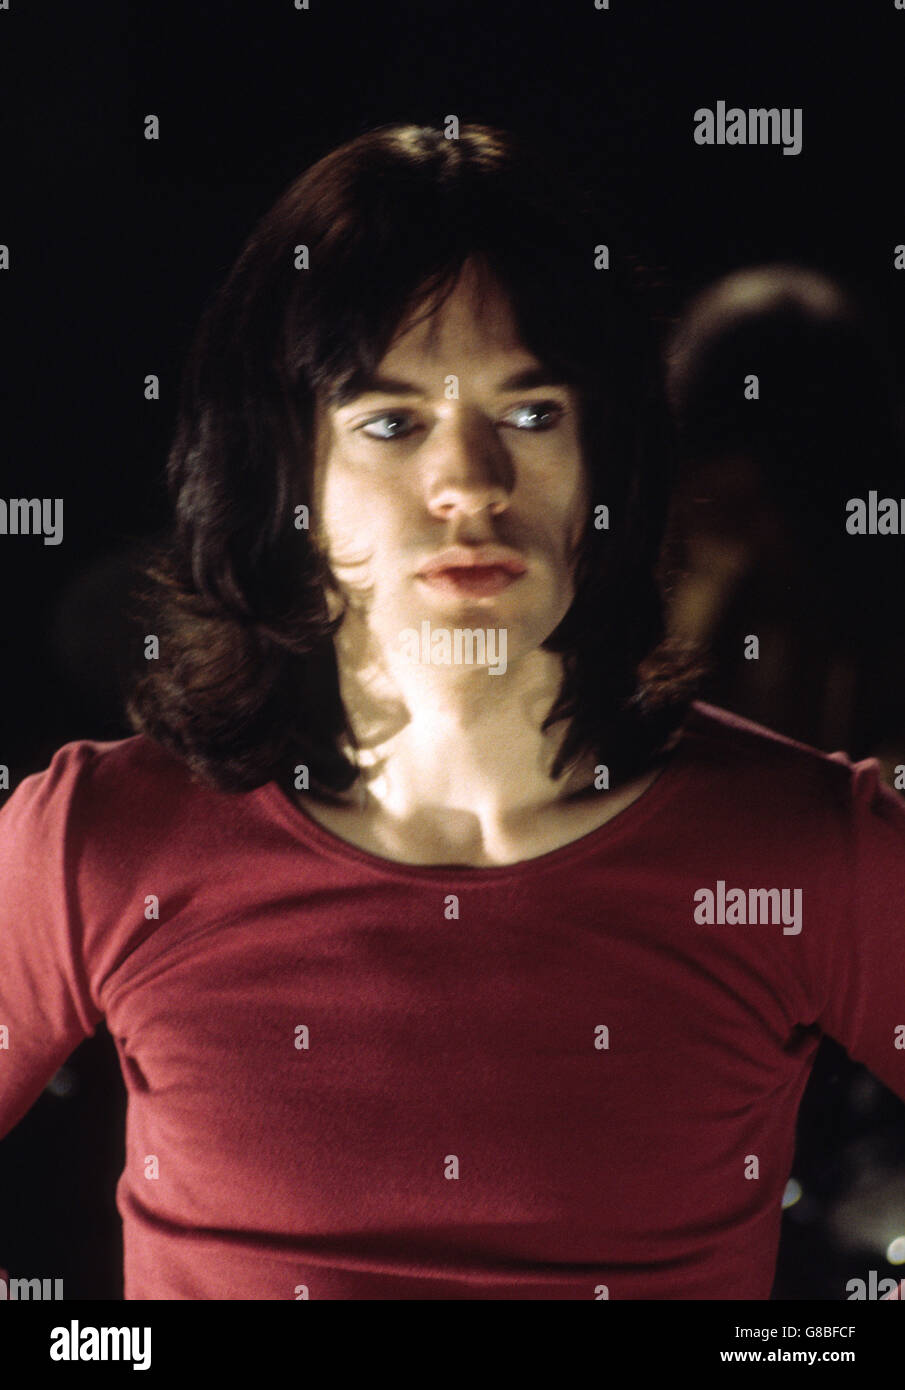 Mick Jagger, cantante de The Rolling Stones, fotografiado como la película de la banda en los estudios de LWT (London Weekend Television) en Londres. Foto de stock